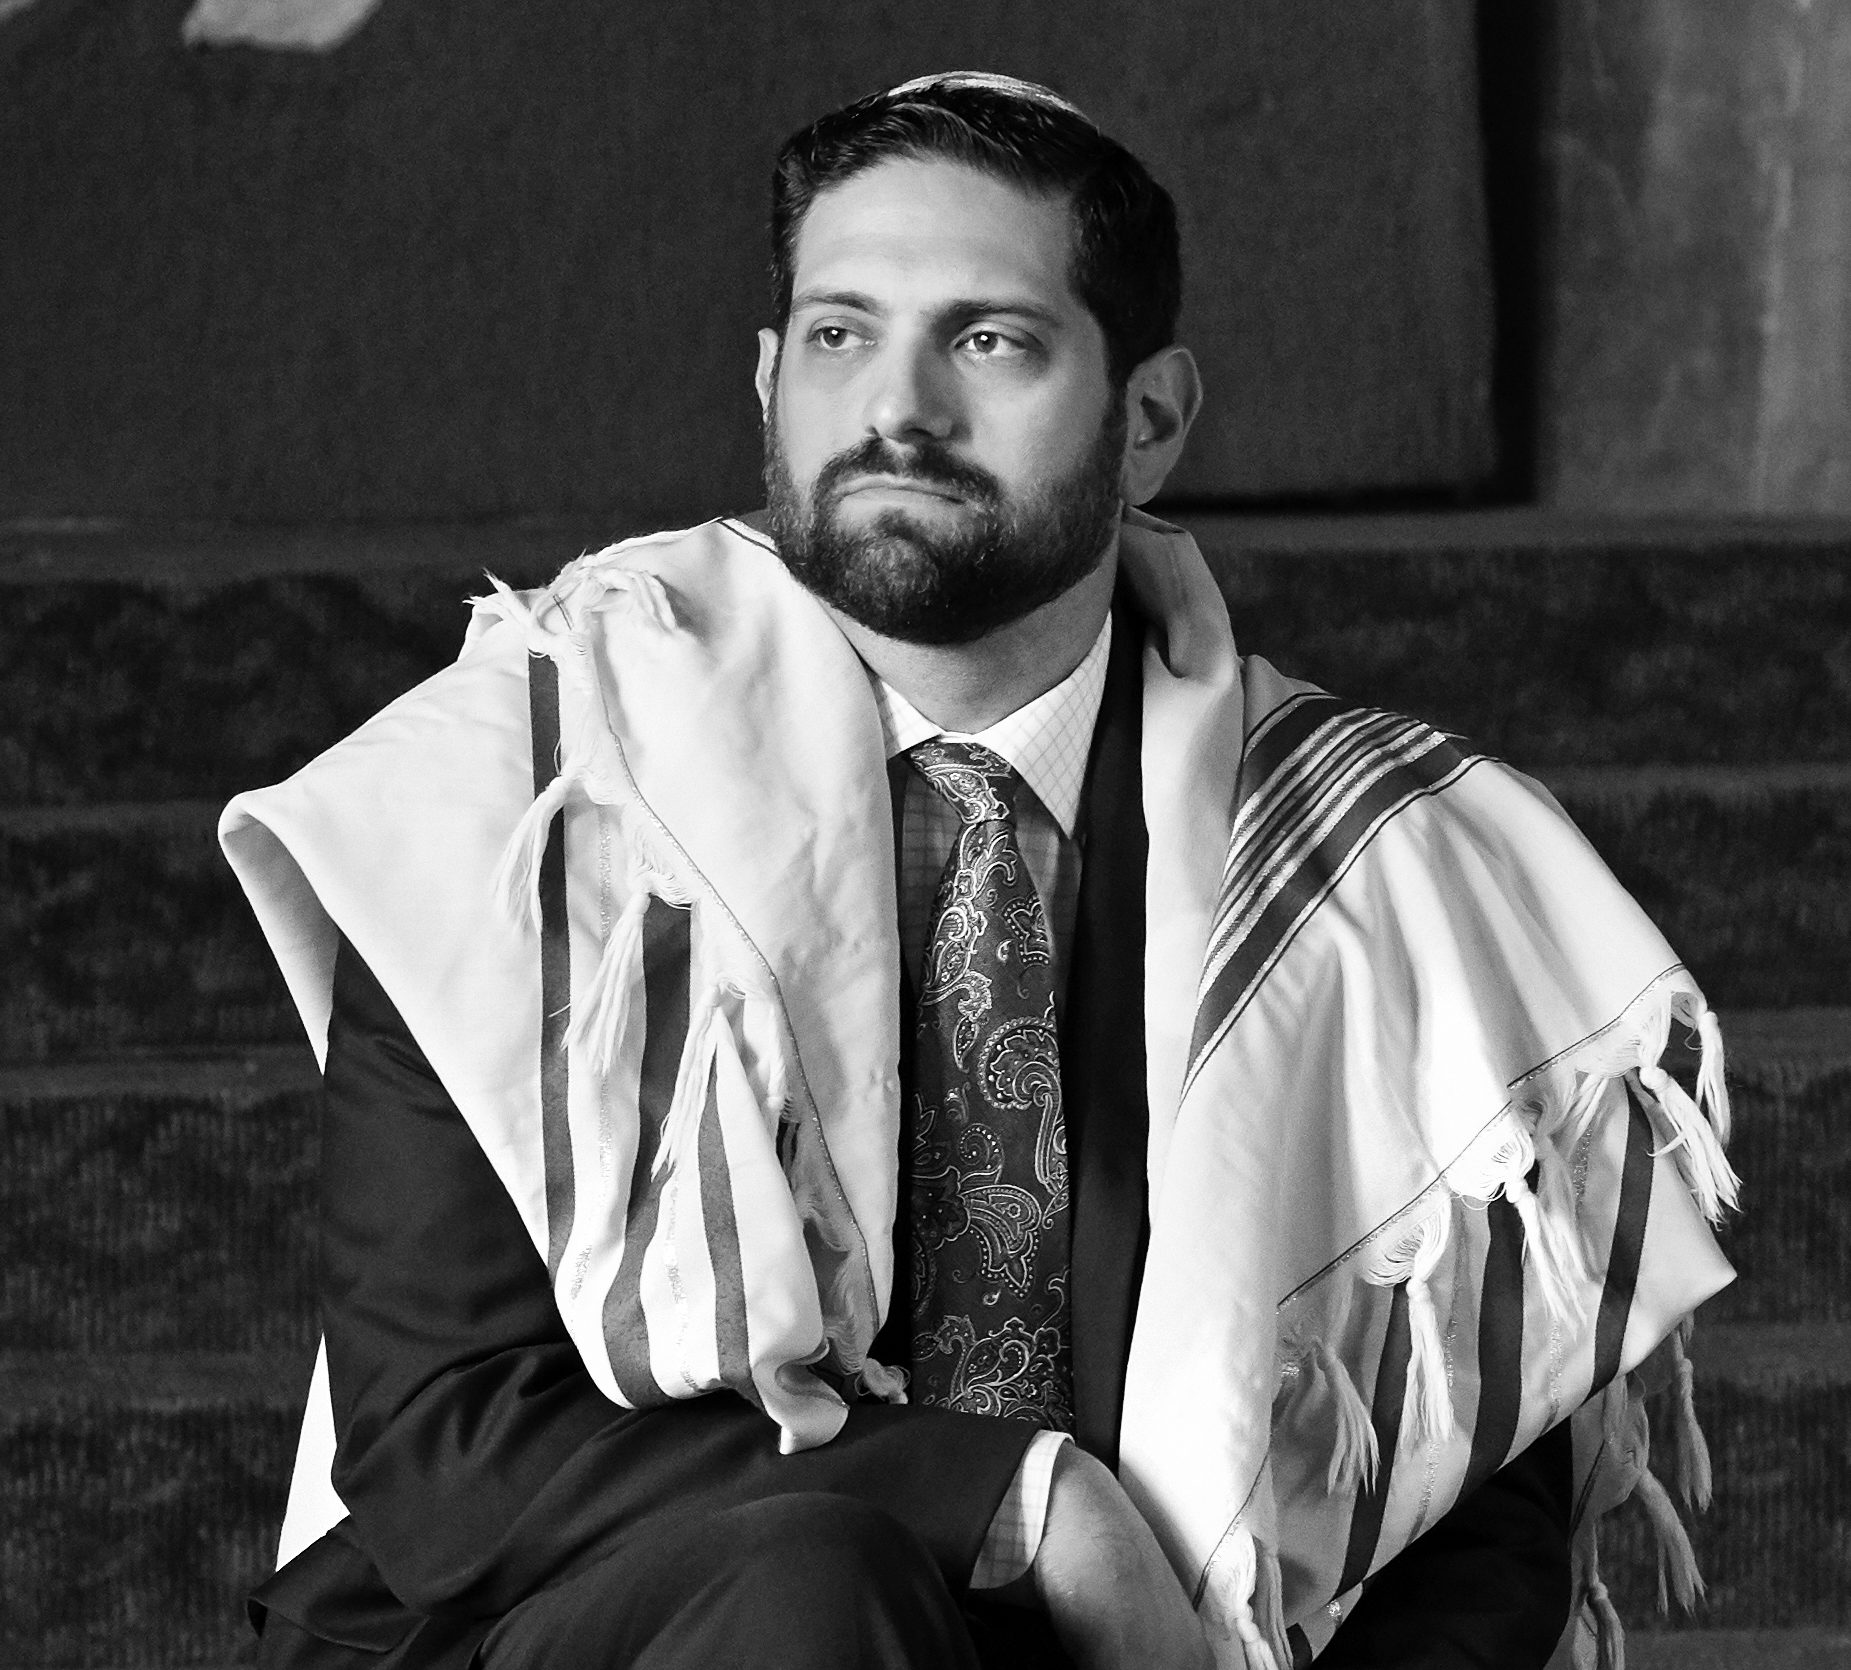 Rabbi Jeremy Fine